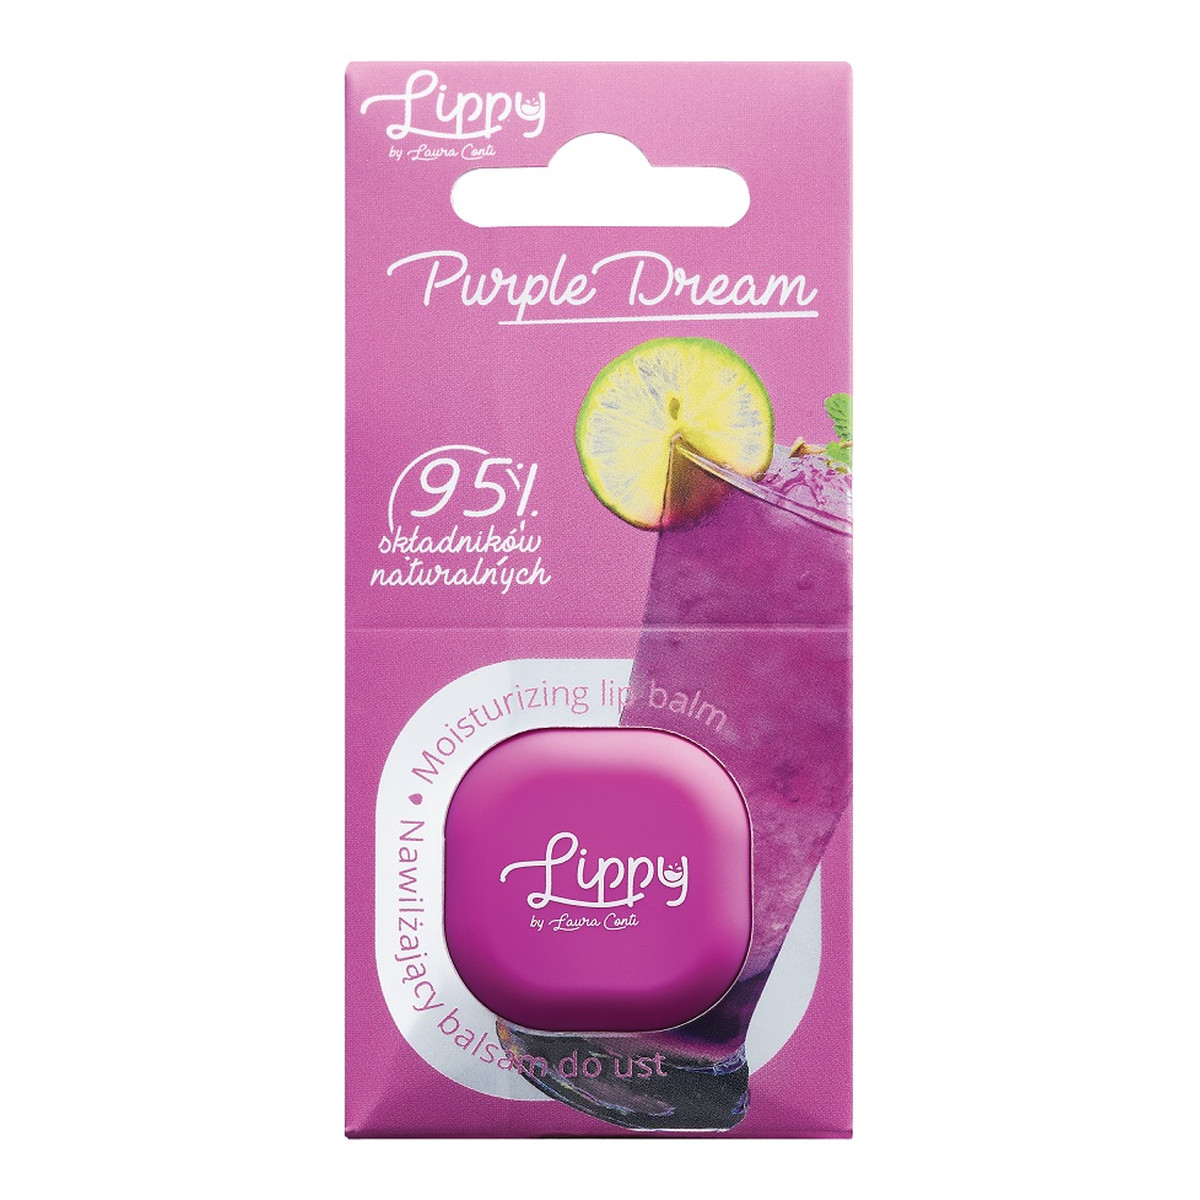 Laura Conti Lippy Balsam do ust purple dream 6,2 g